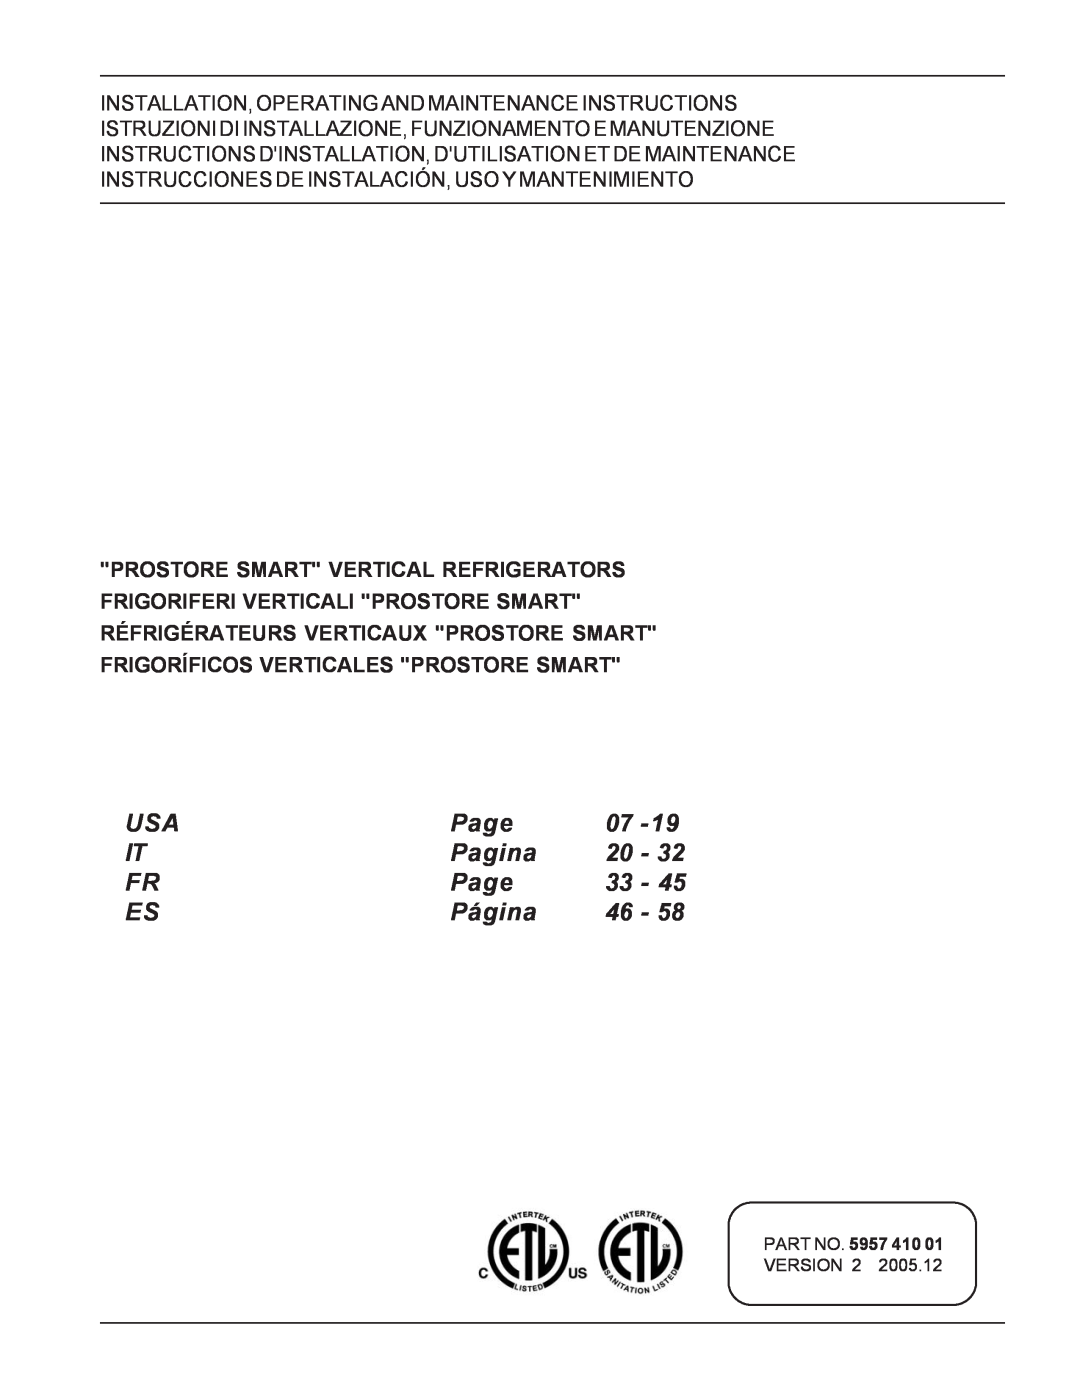 Electrolux 726673, PR43RE1FEU manual Page, Pagina, Página, PART NO. 5957 410 01 VERSION 2 